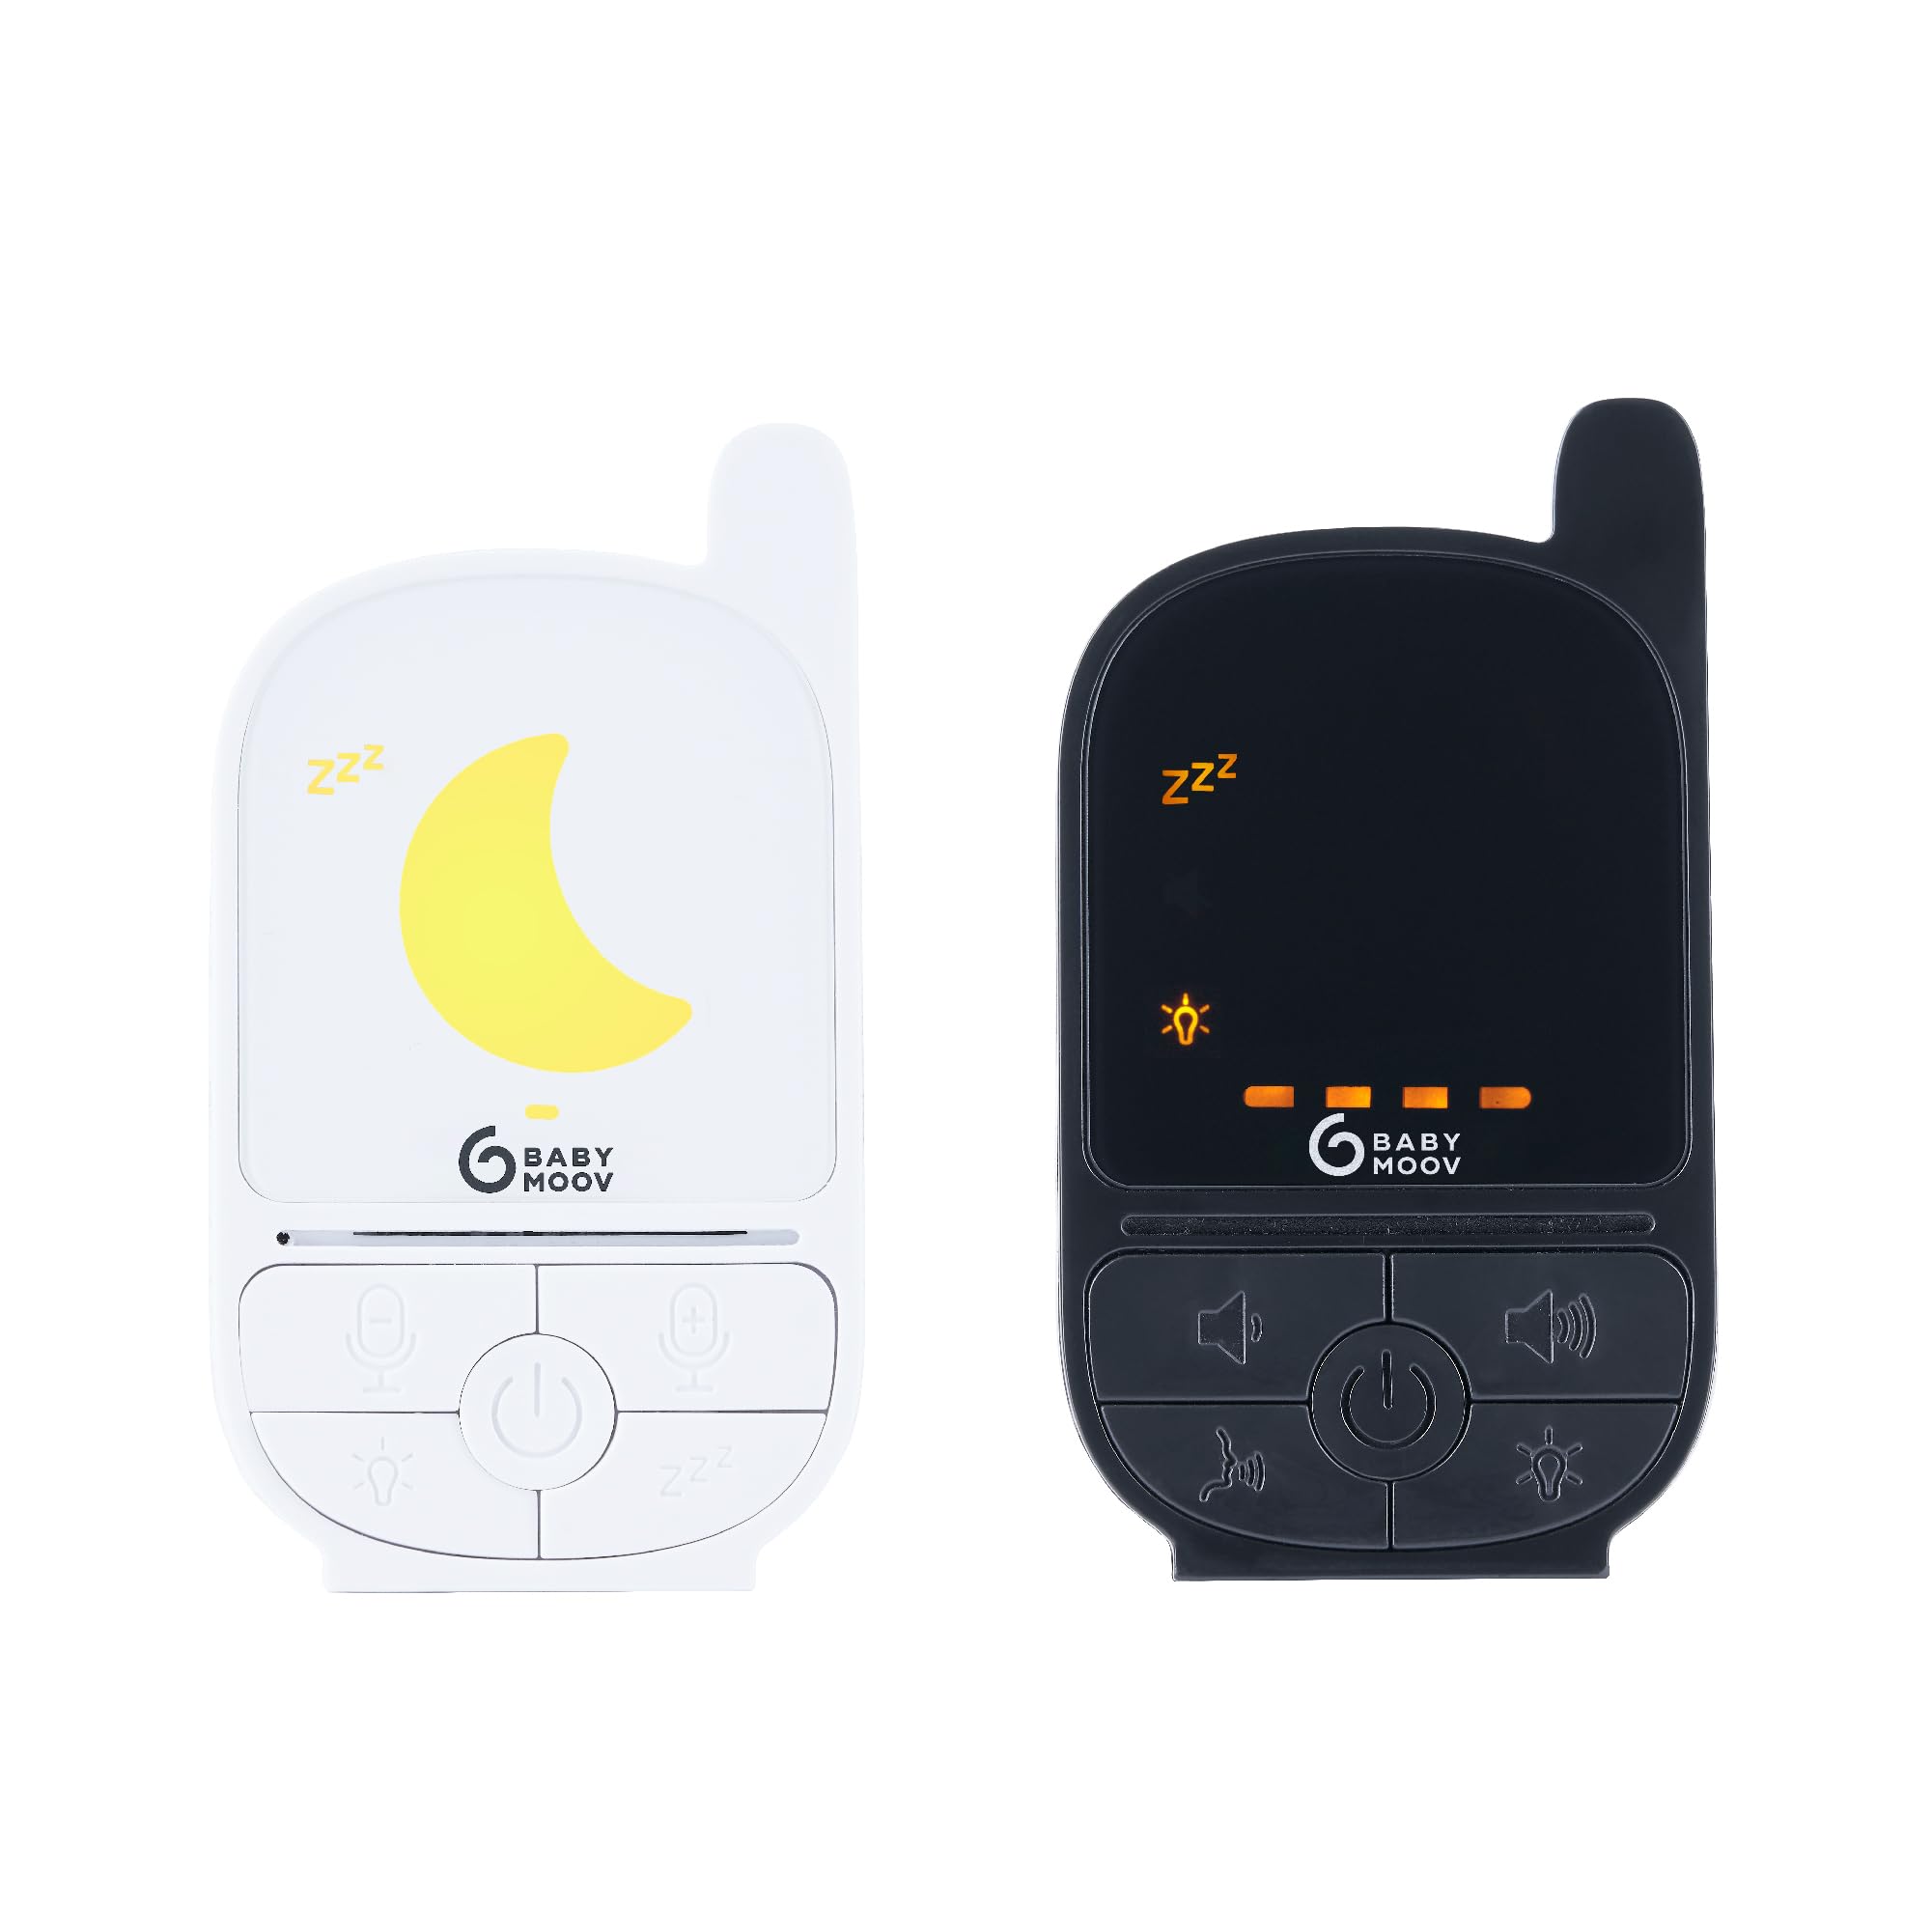 Babymoov Babyphone Handy Care - Sleep Technology, Nachtlicht, Gegensprechfunktion, 500m Reichweite